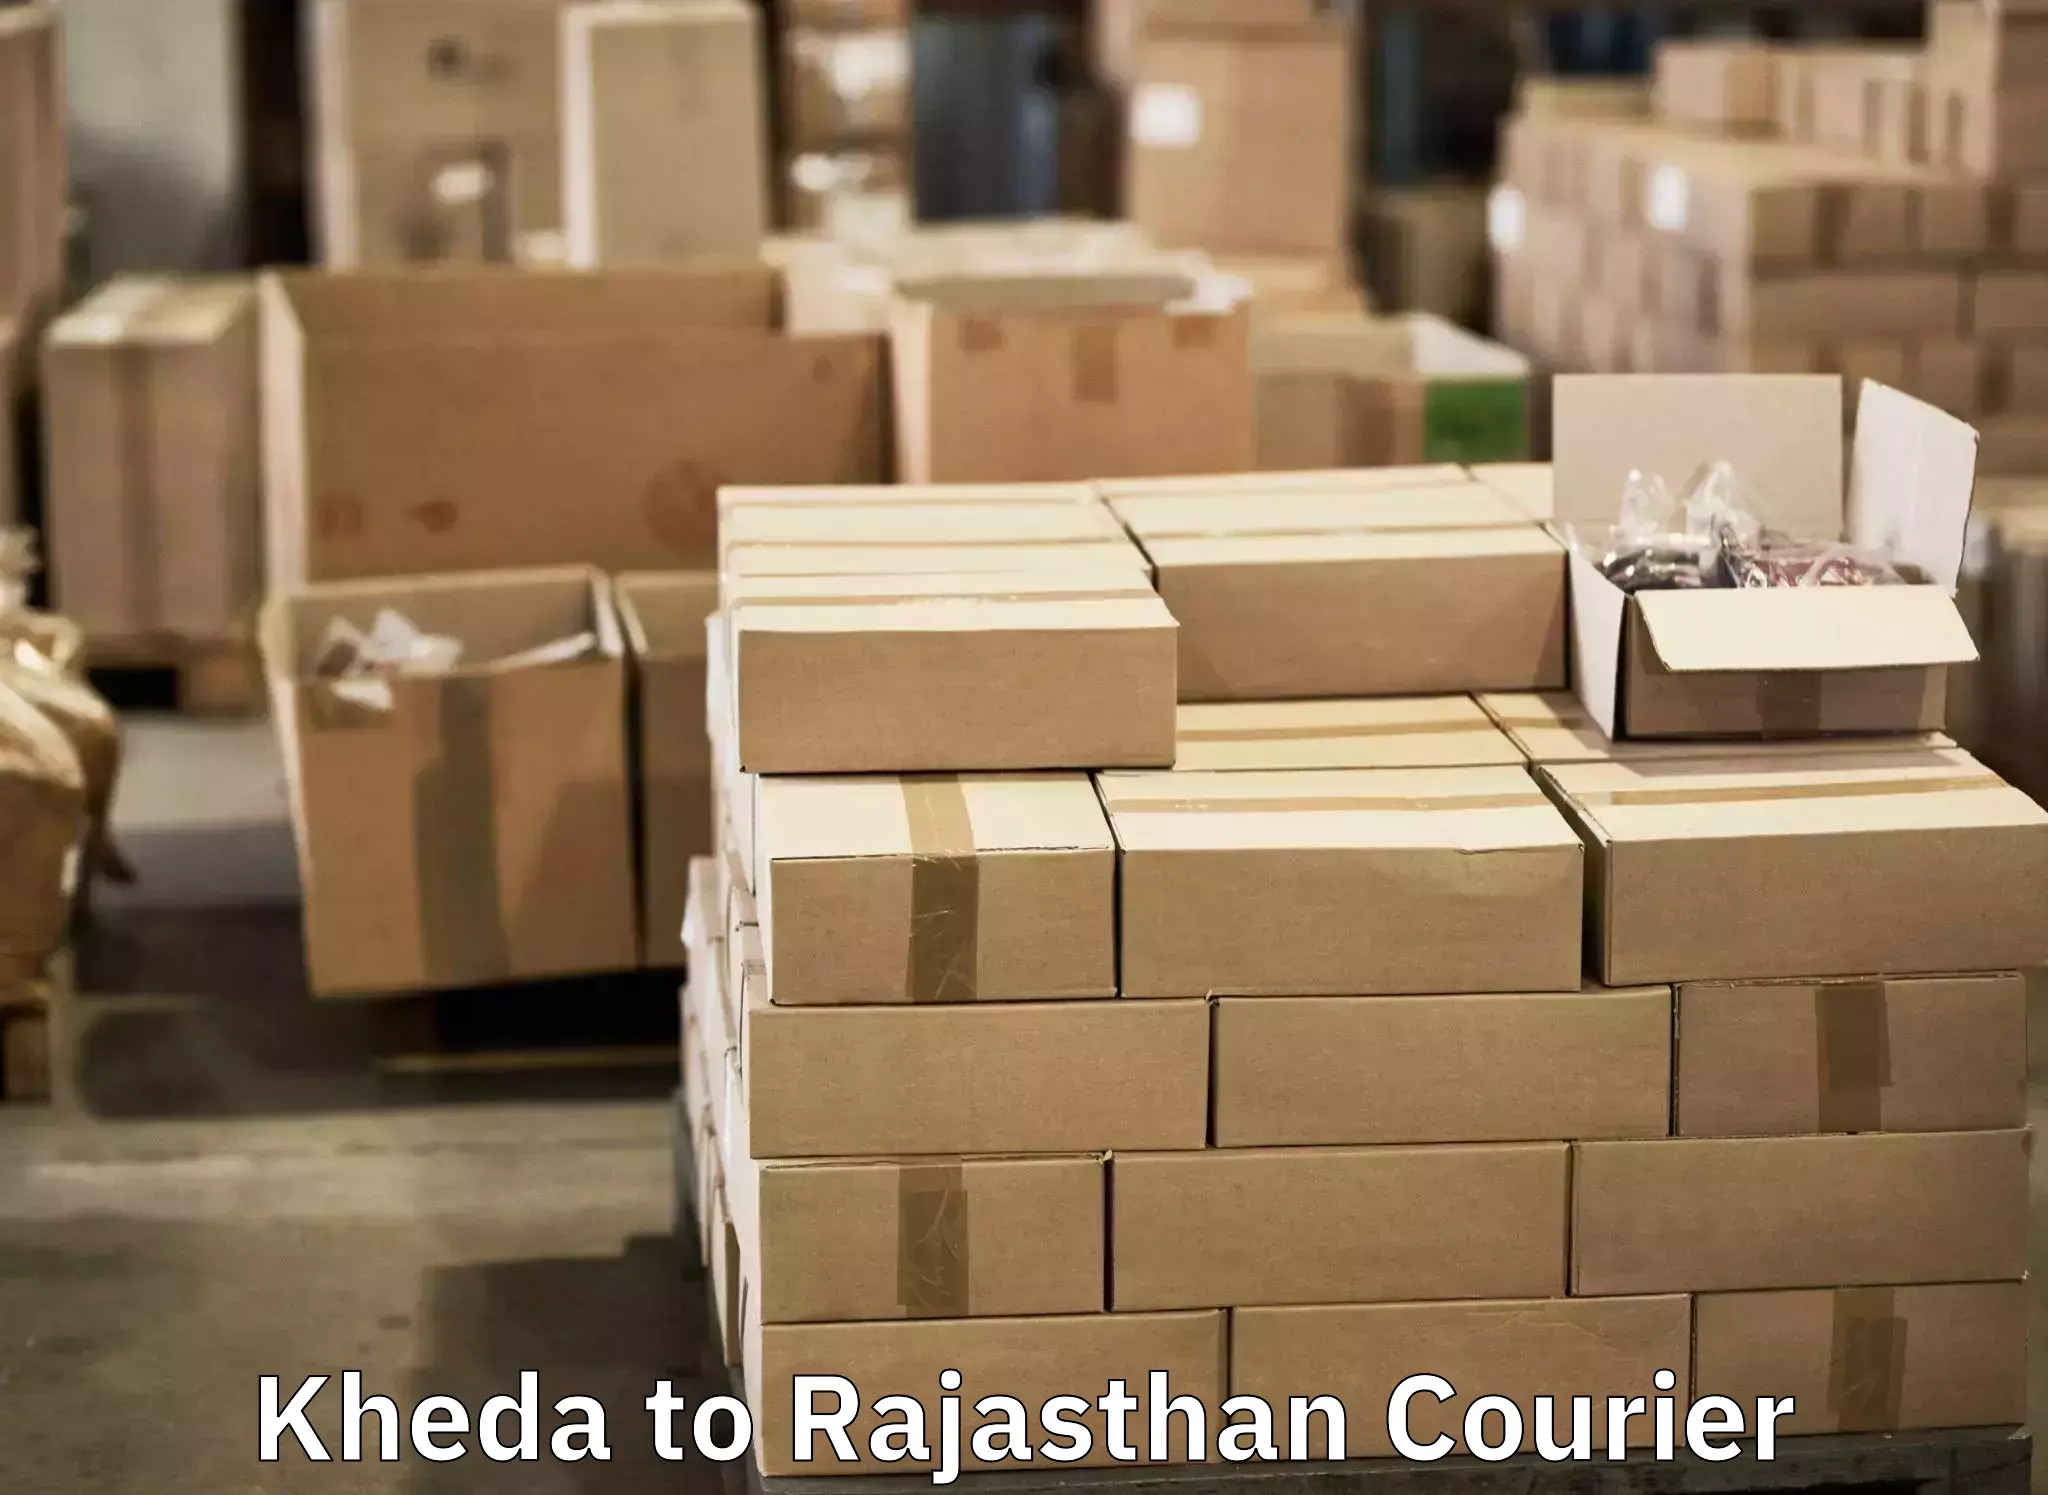 Baggage shipping experts Kheda to Jaipur